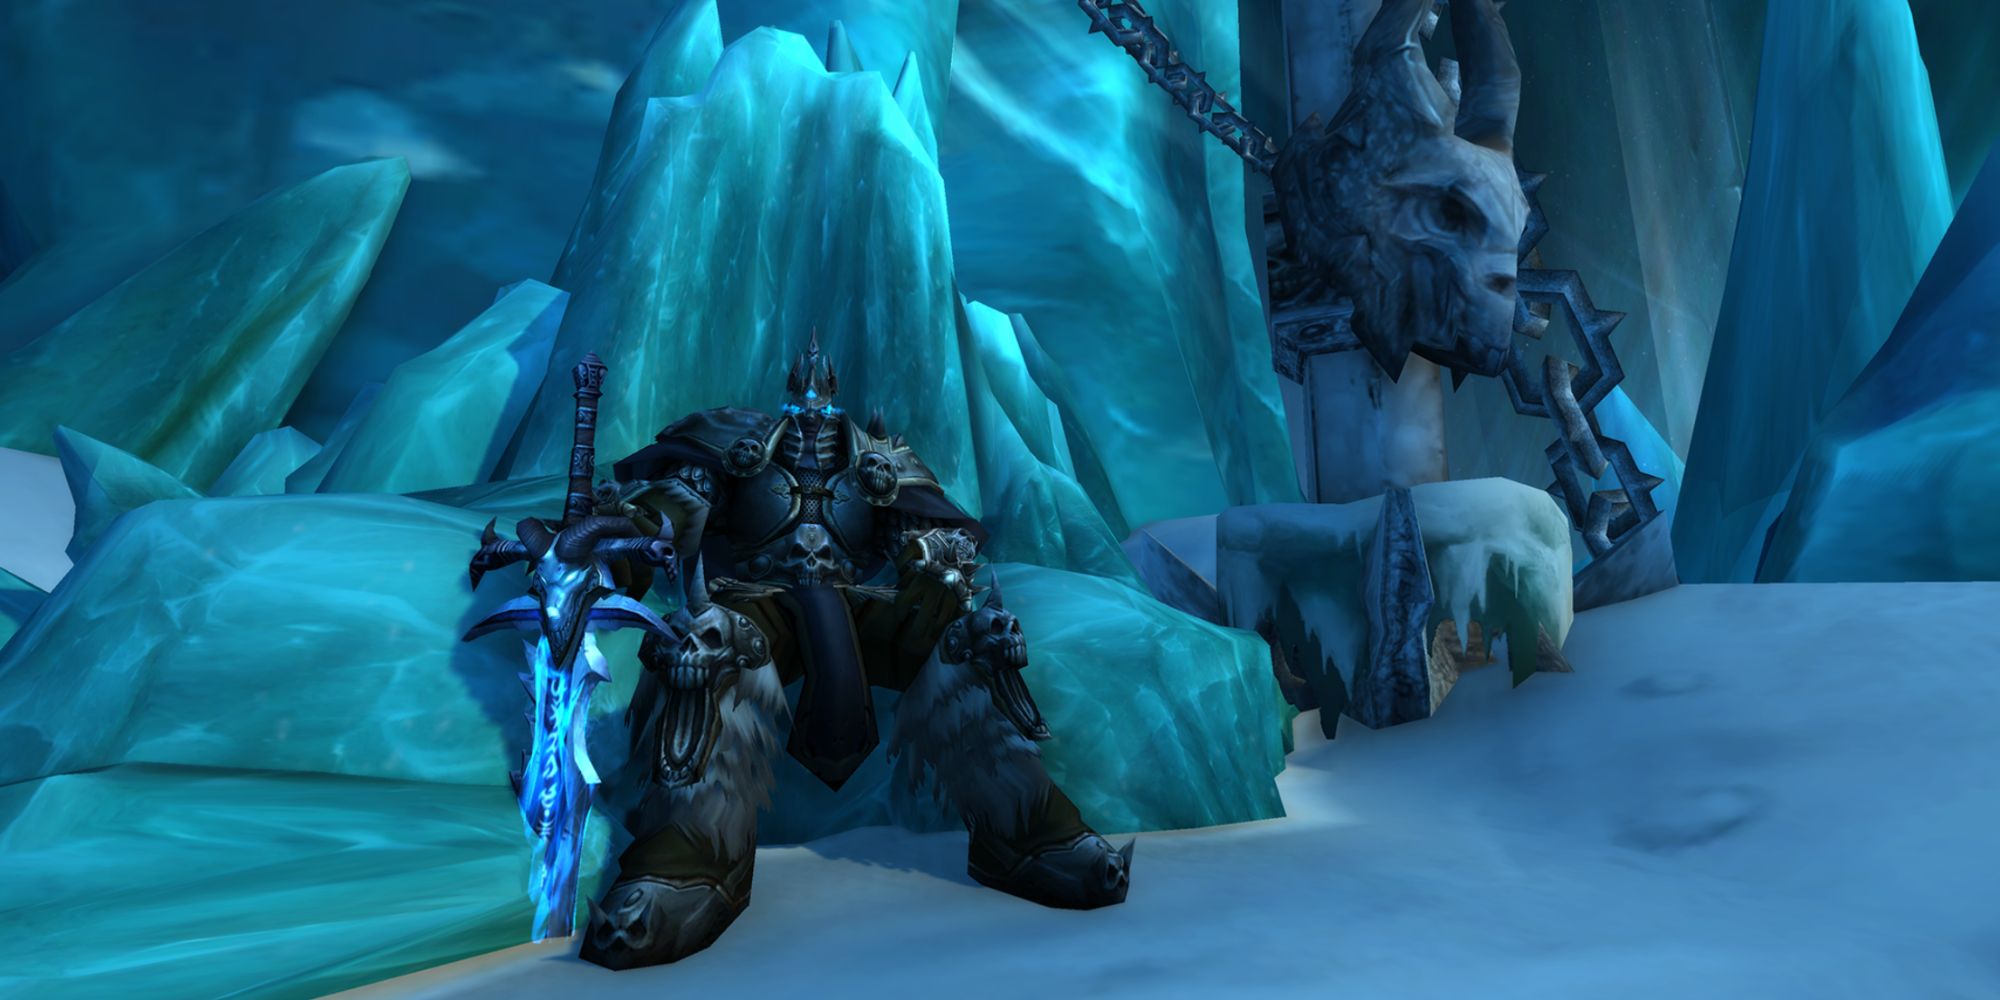 World of Warcraft Arthas sitting on Frozen Throne